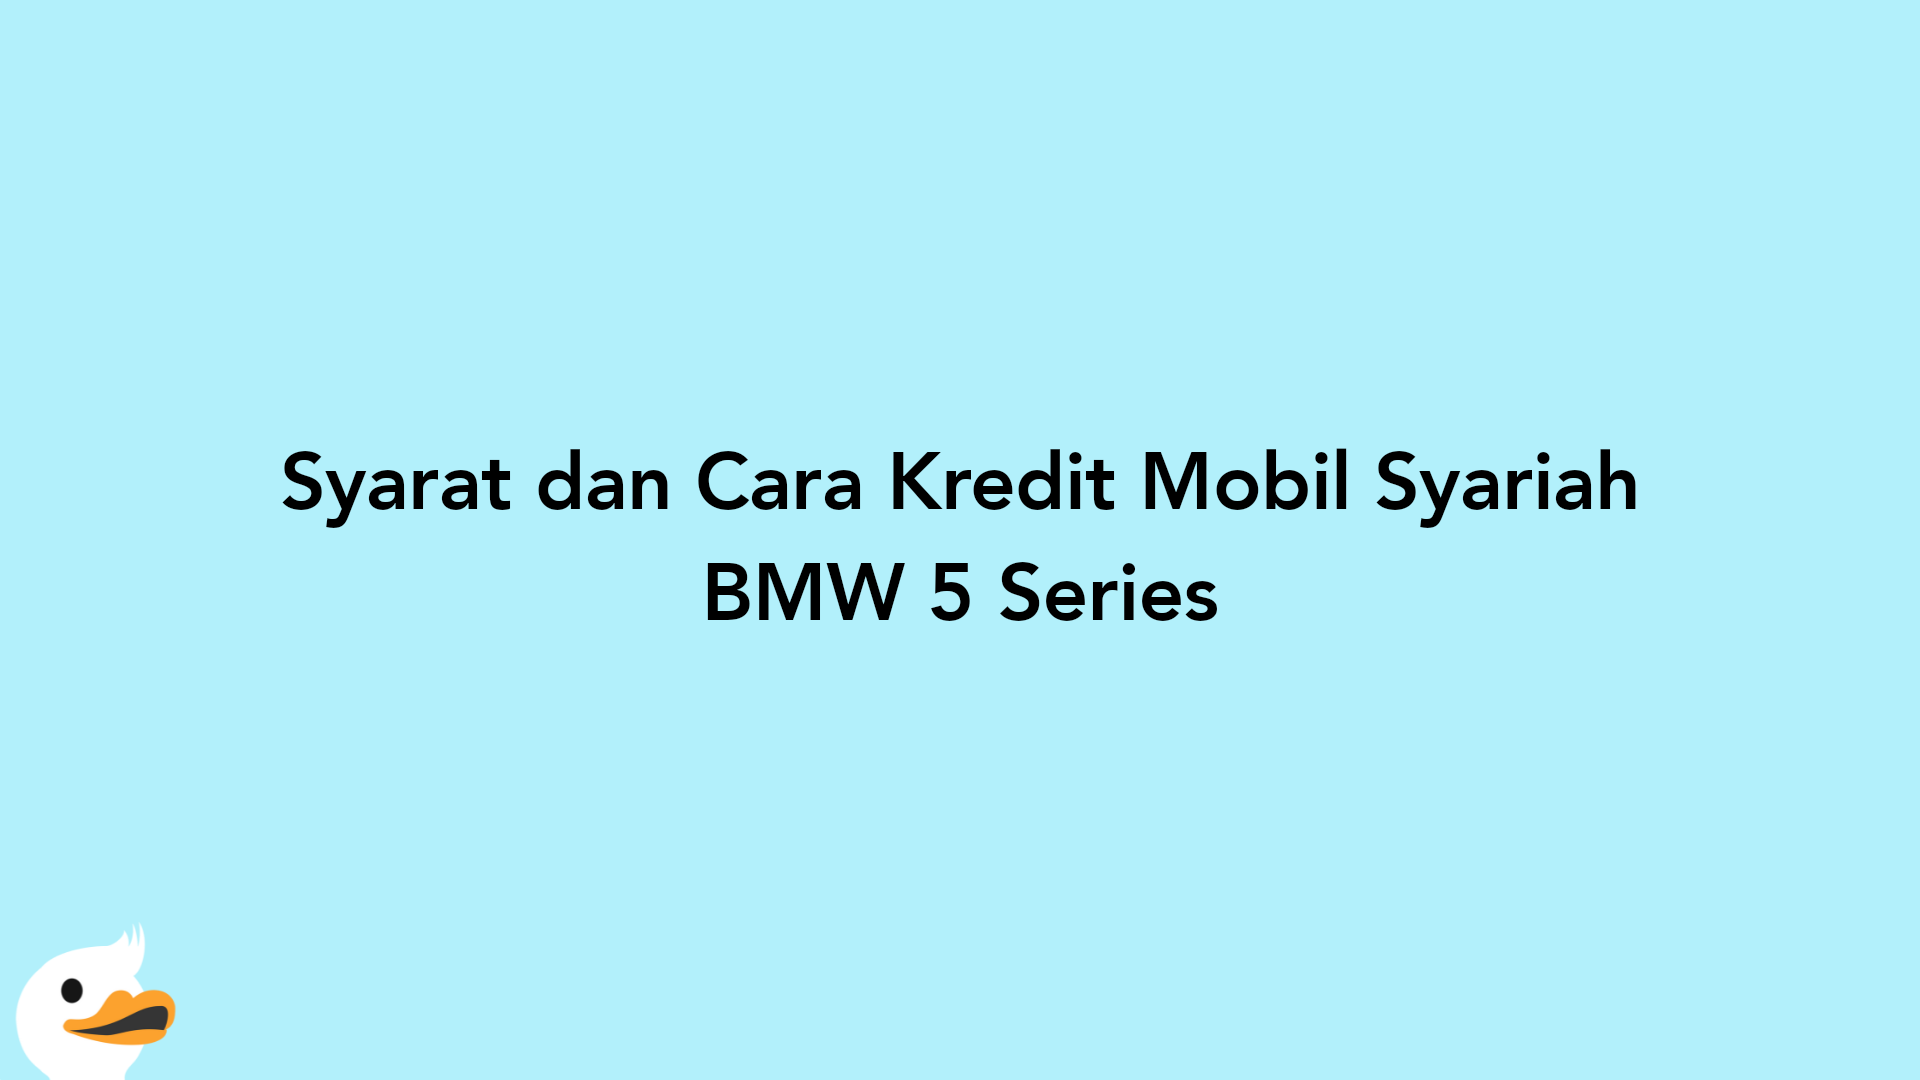 Syarat dan Cara Kredit Mobil Syariah BMW 5 Series